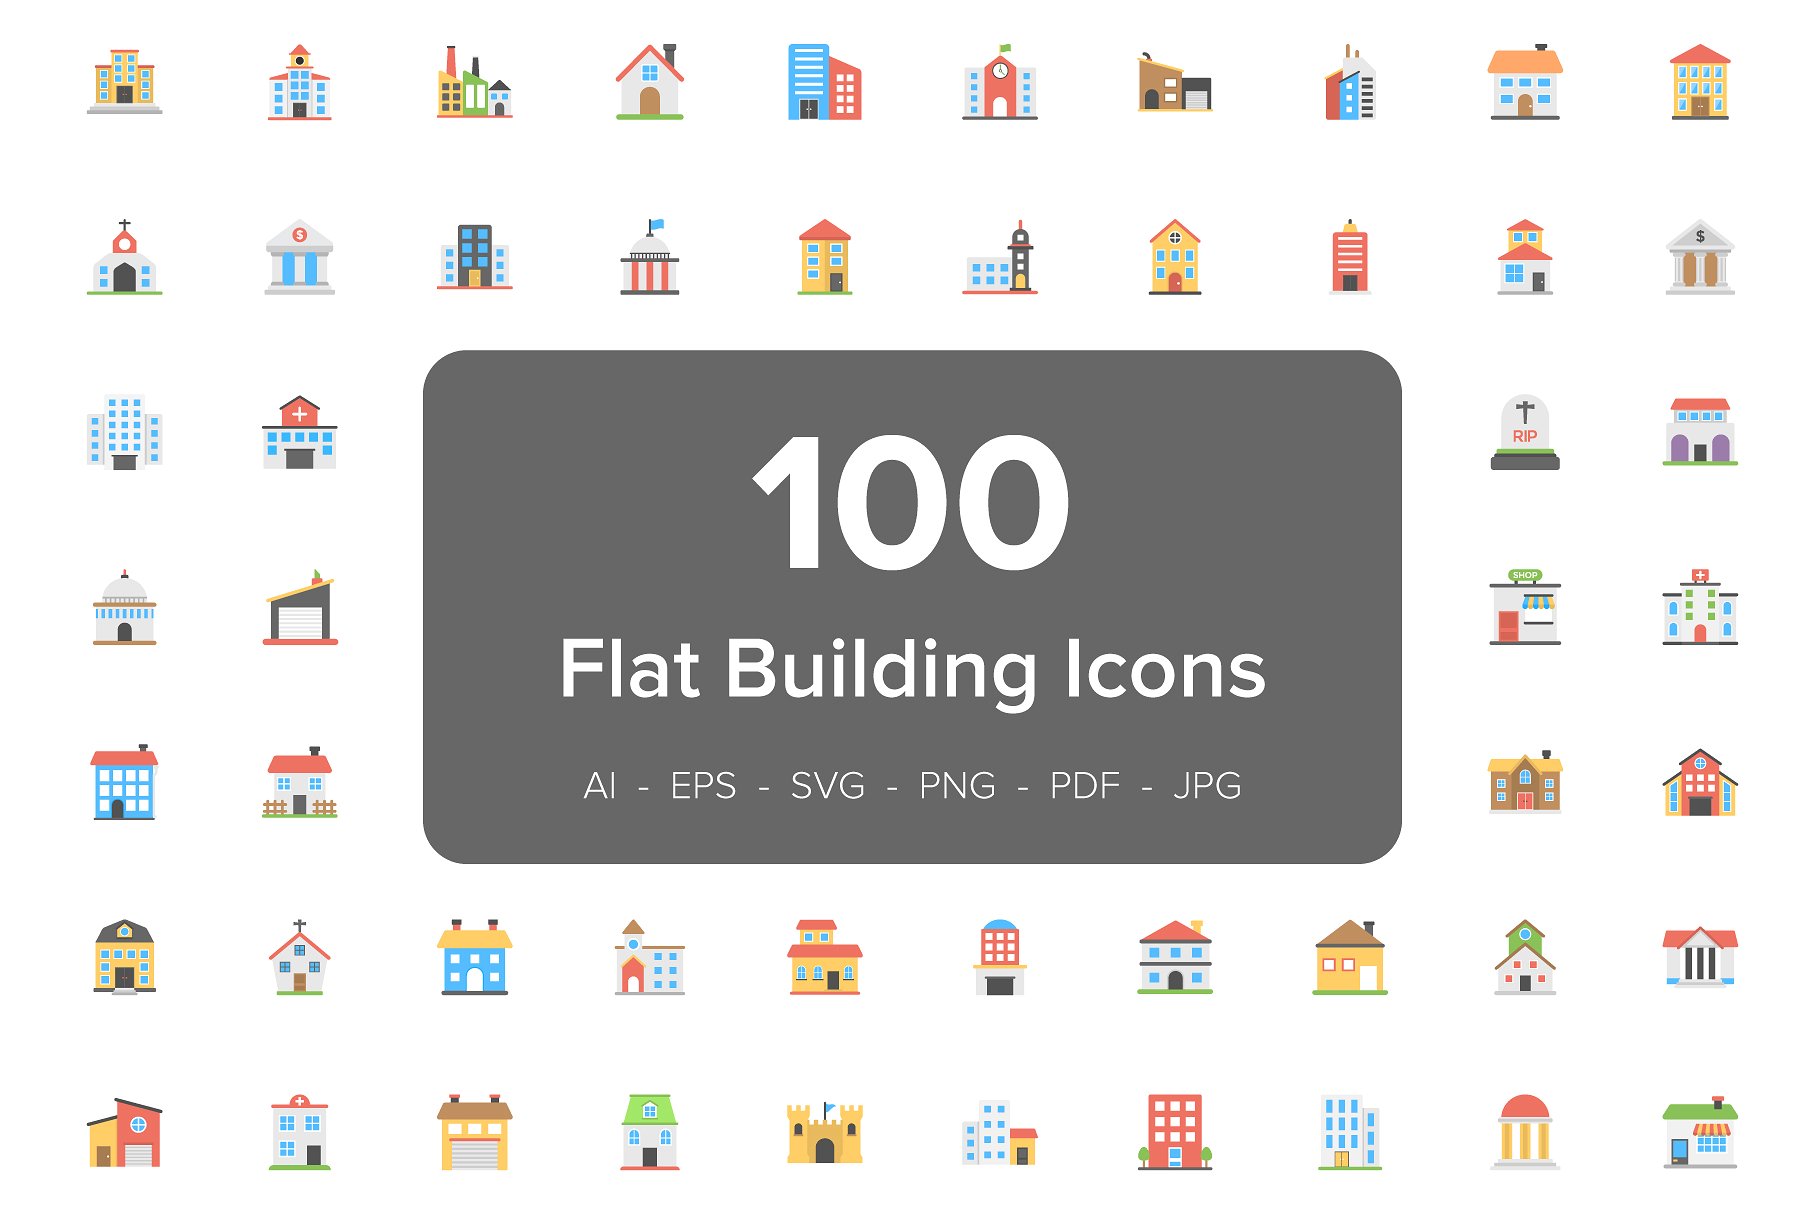 彩色扁平化建筑图标素材 100 Buildings Flat